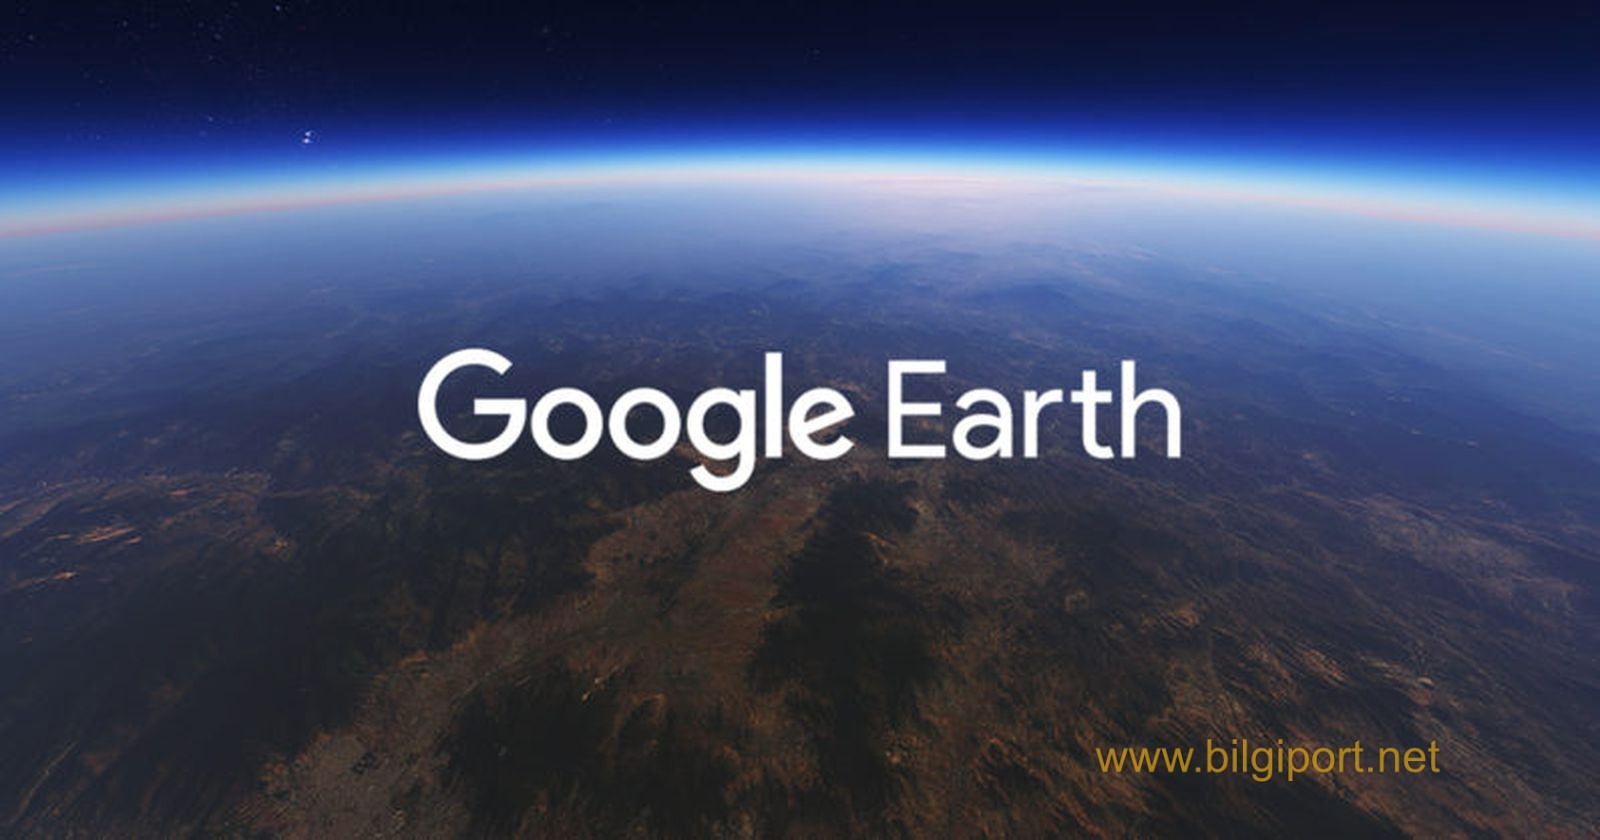 google_earth.jpg